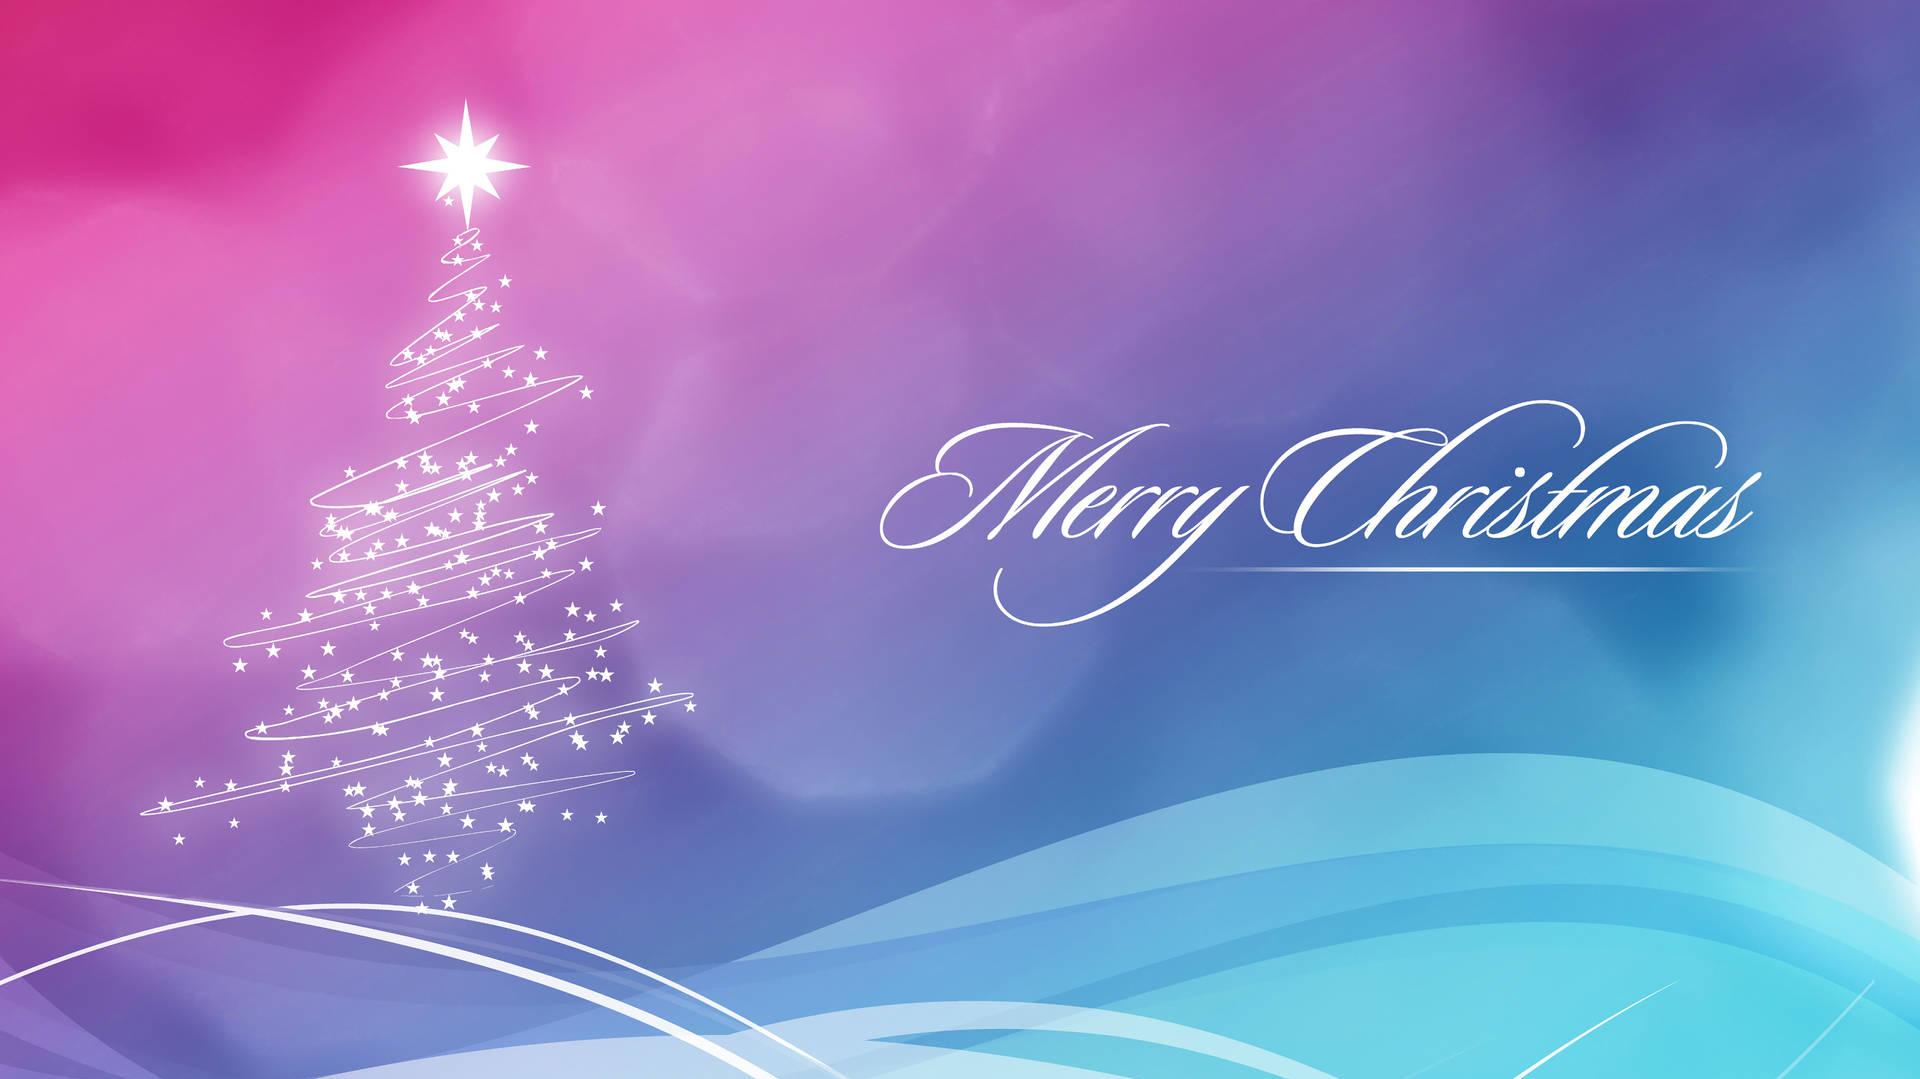 Download 8k Christmas Pastel Greeting Wallpaper